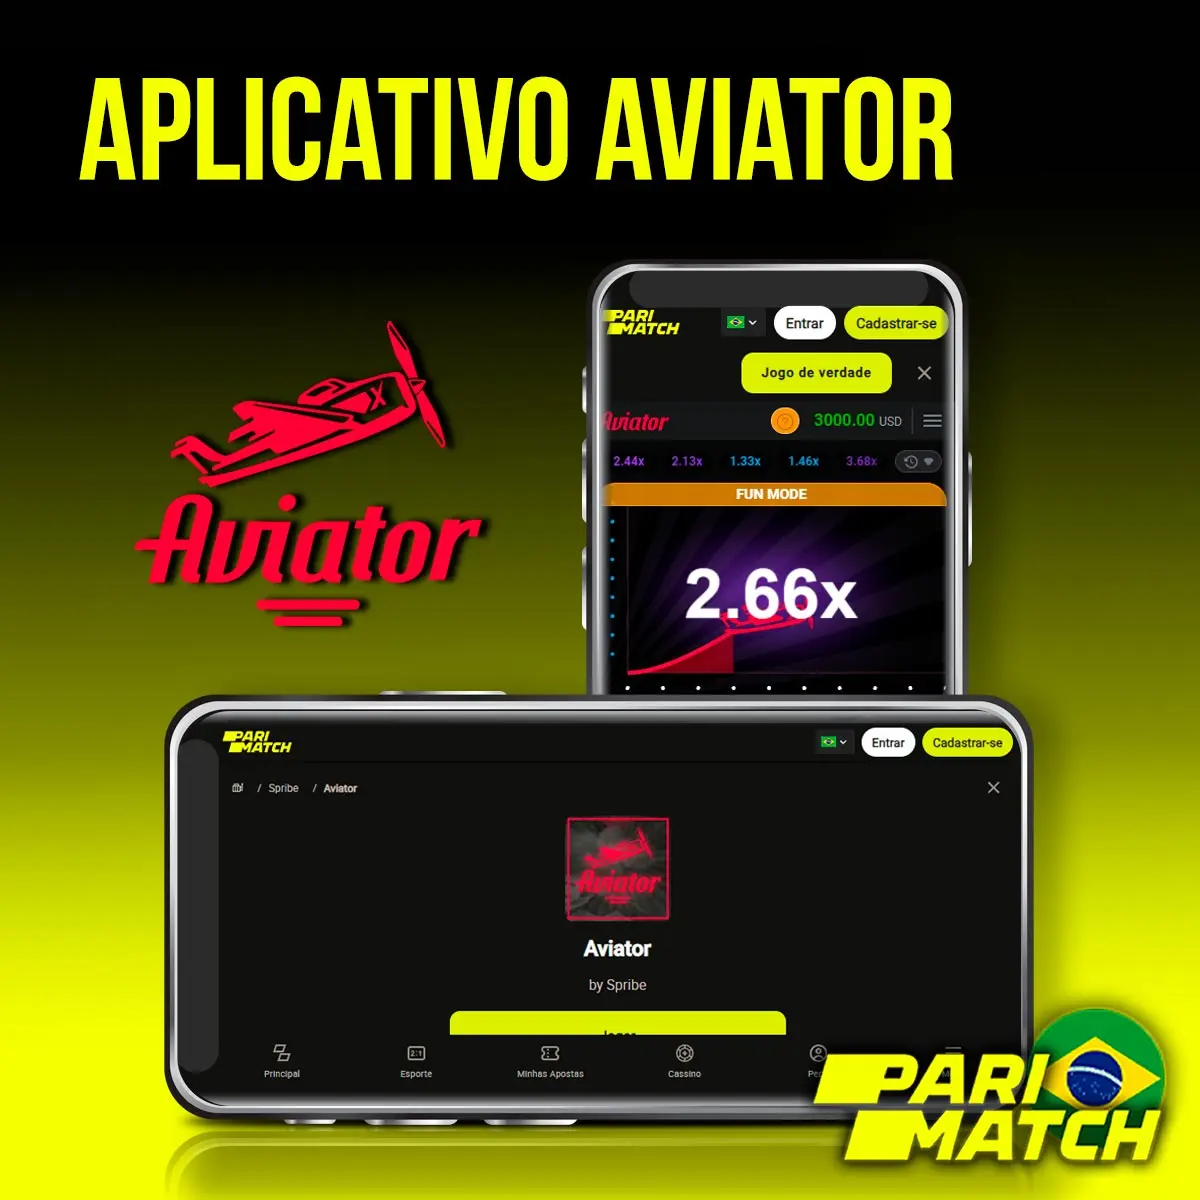 Aplicativo da Parimatch para jogar Aviator